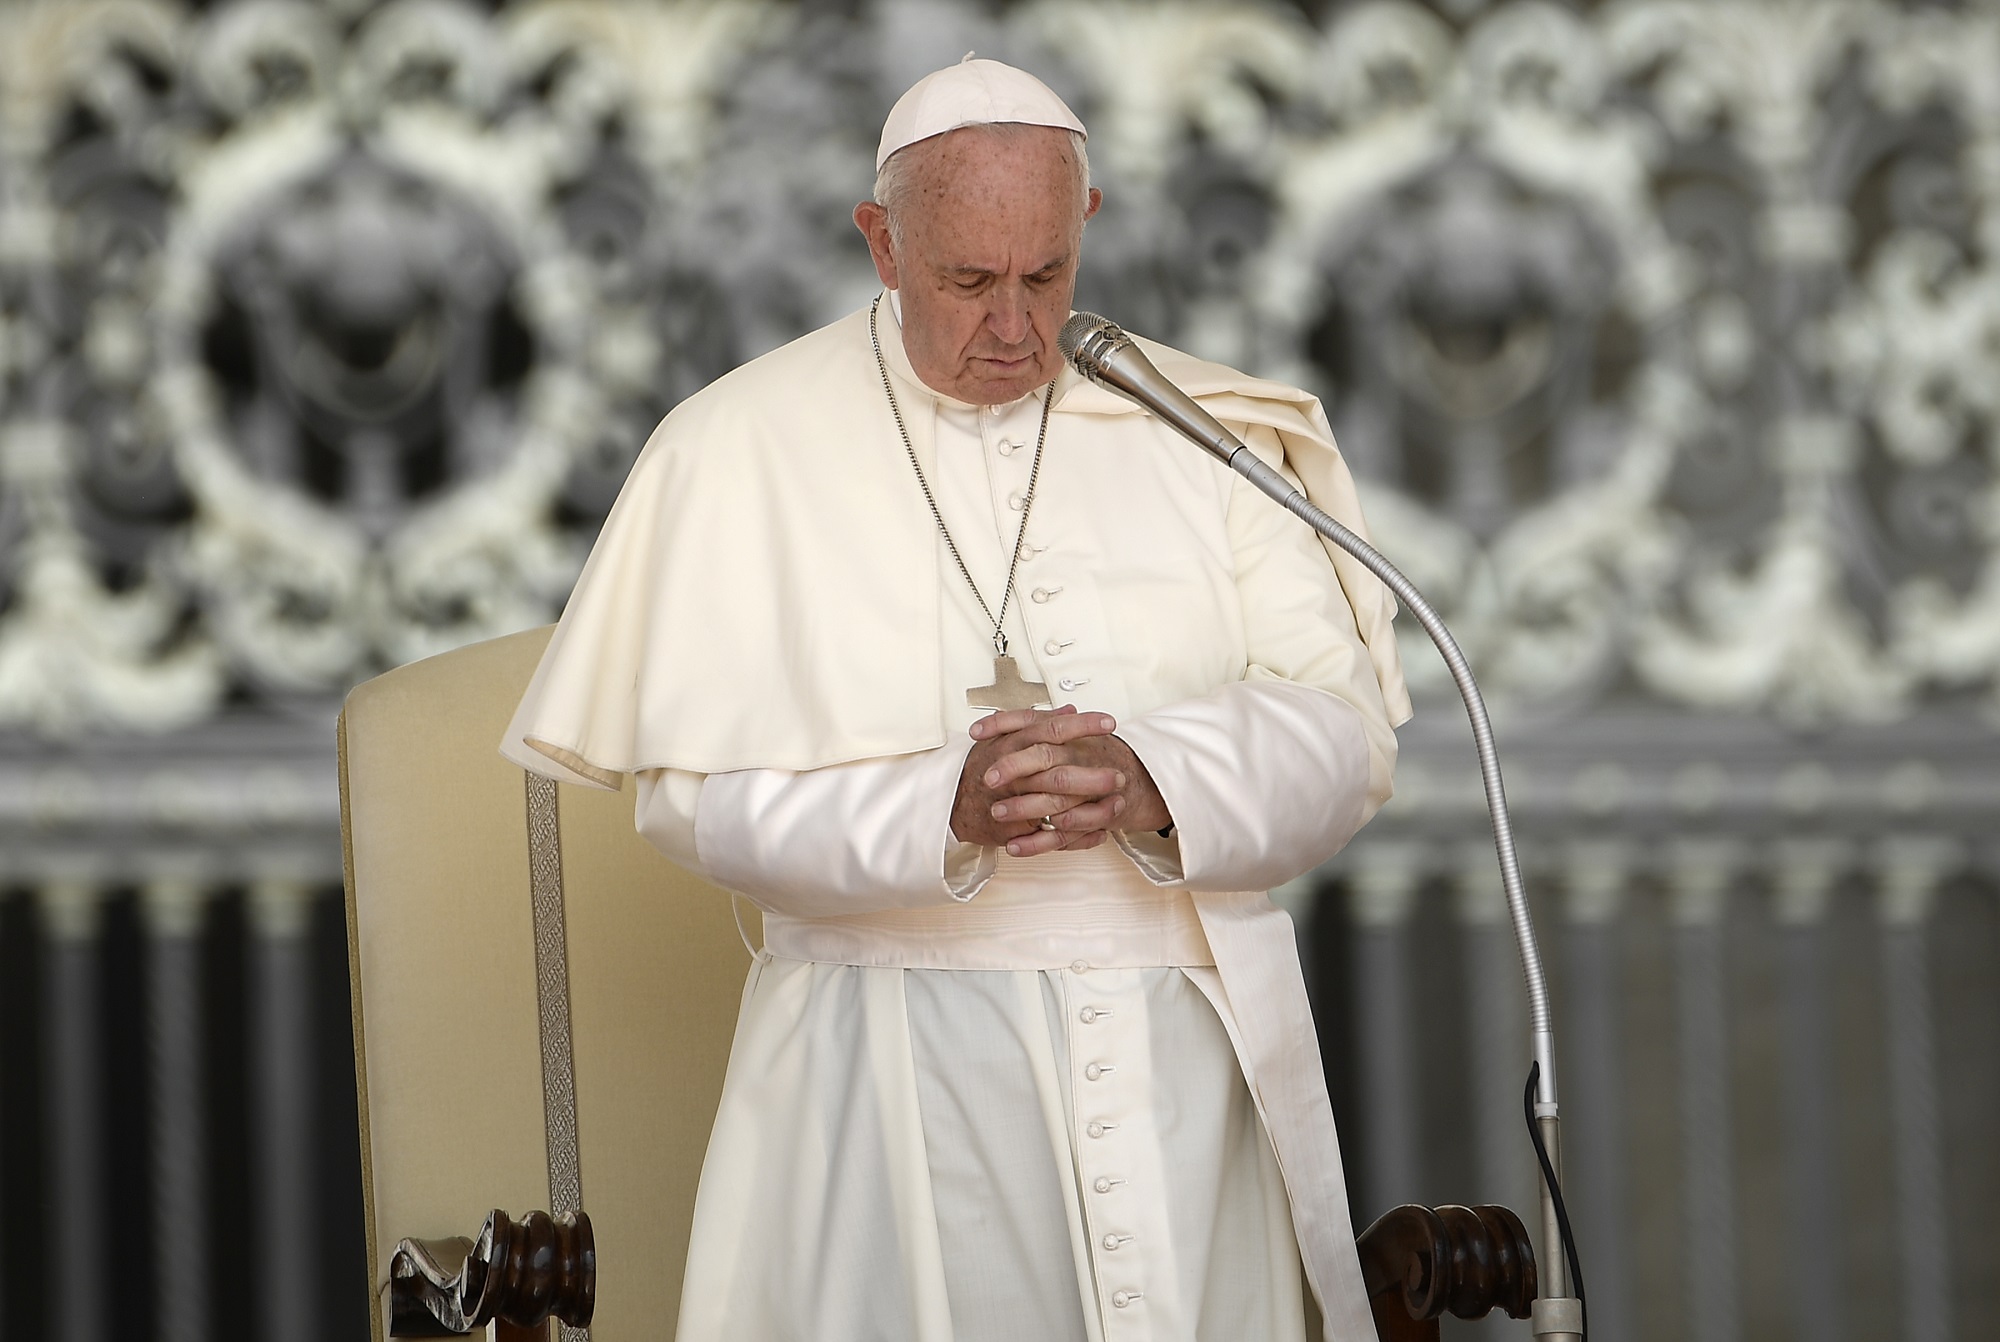 El Papa pide que la conferencia de Berlín sirva para lograr la paz en Libia